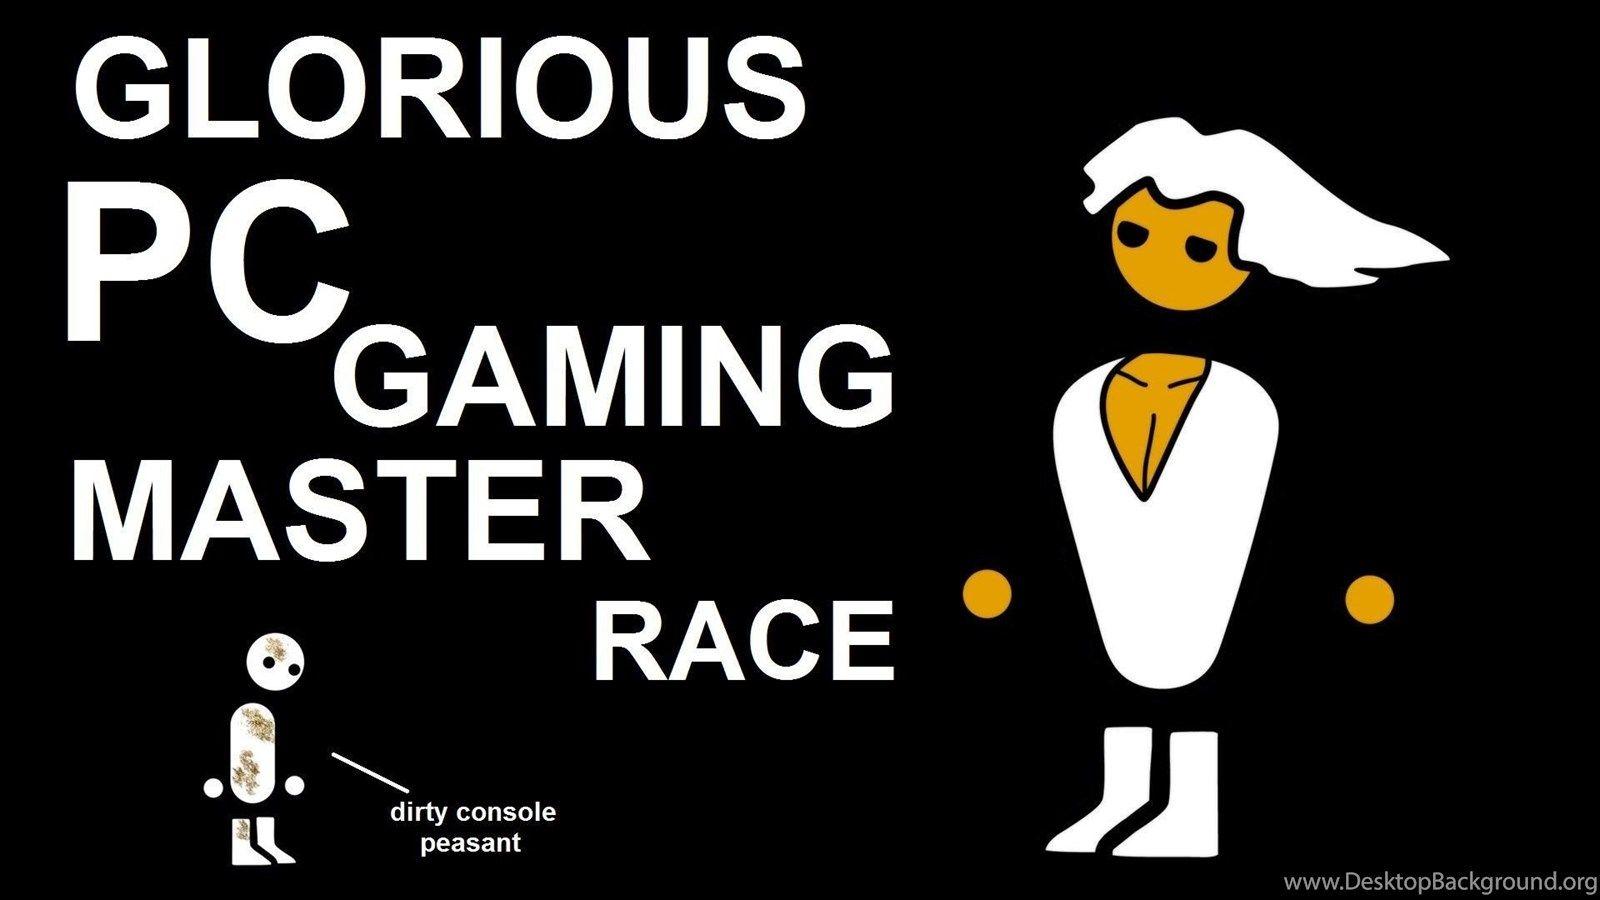 PC Master Race Gaming Wallpaper Image PC Gaming Wallpaperpc